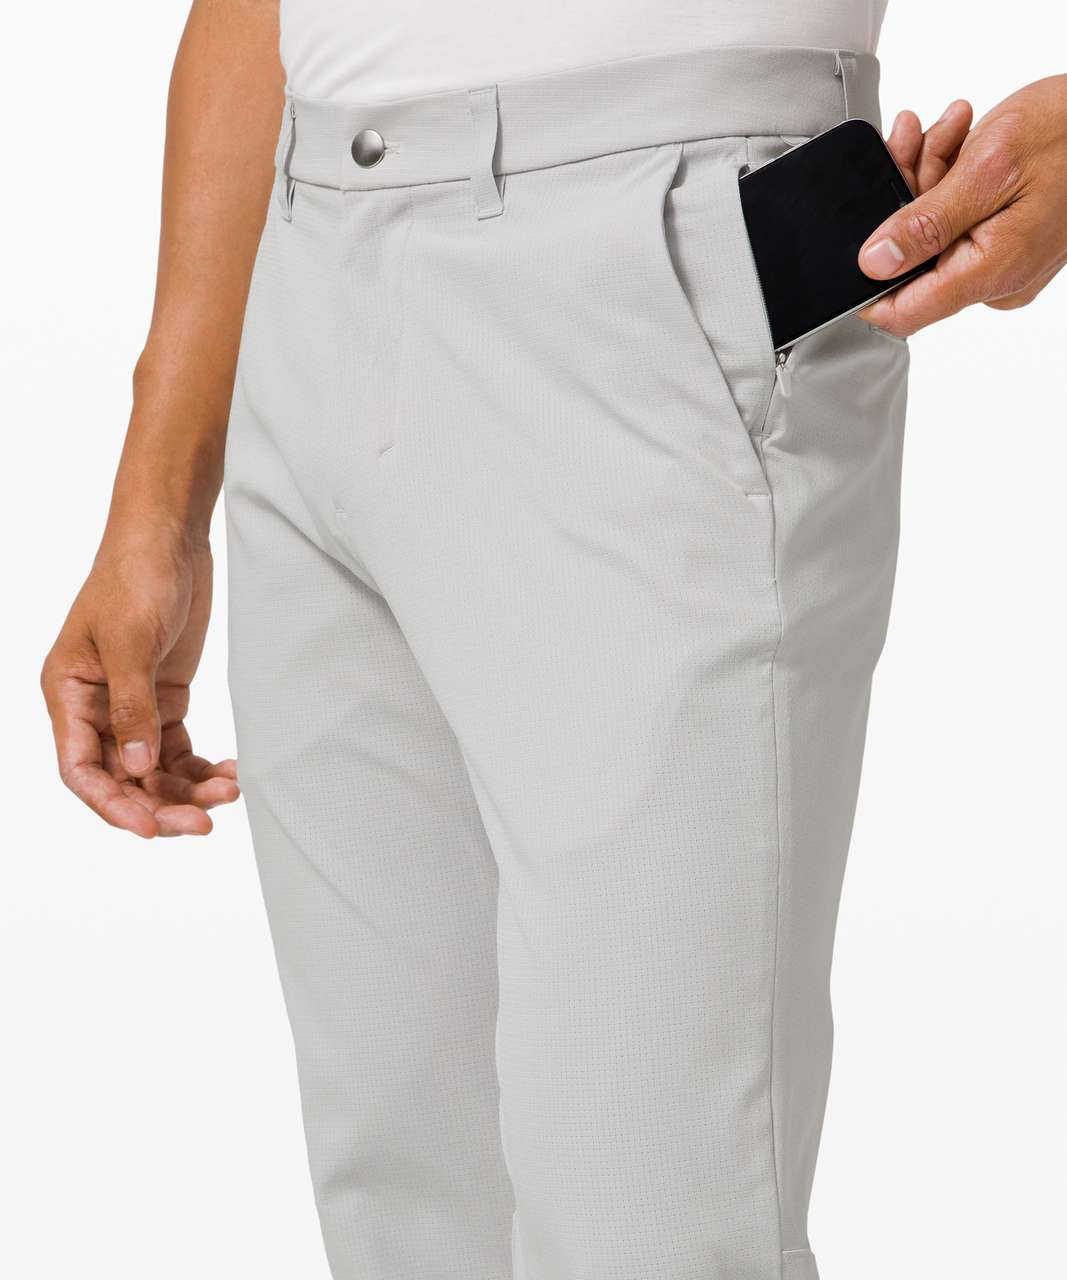 New Lululemon Commission Pant Slim 28 X 34 Light Men's Pants Color Vapor  Gray